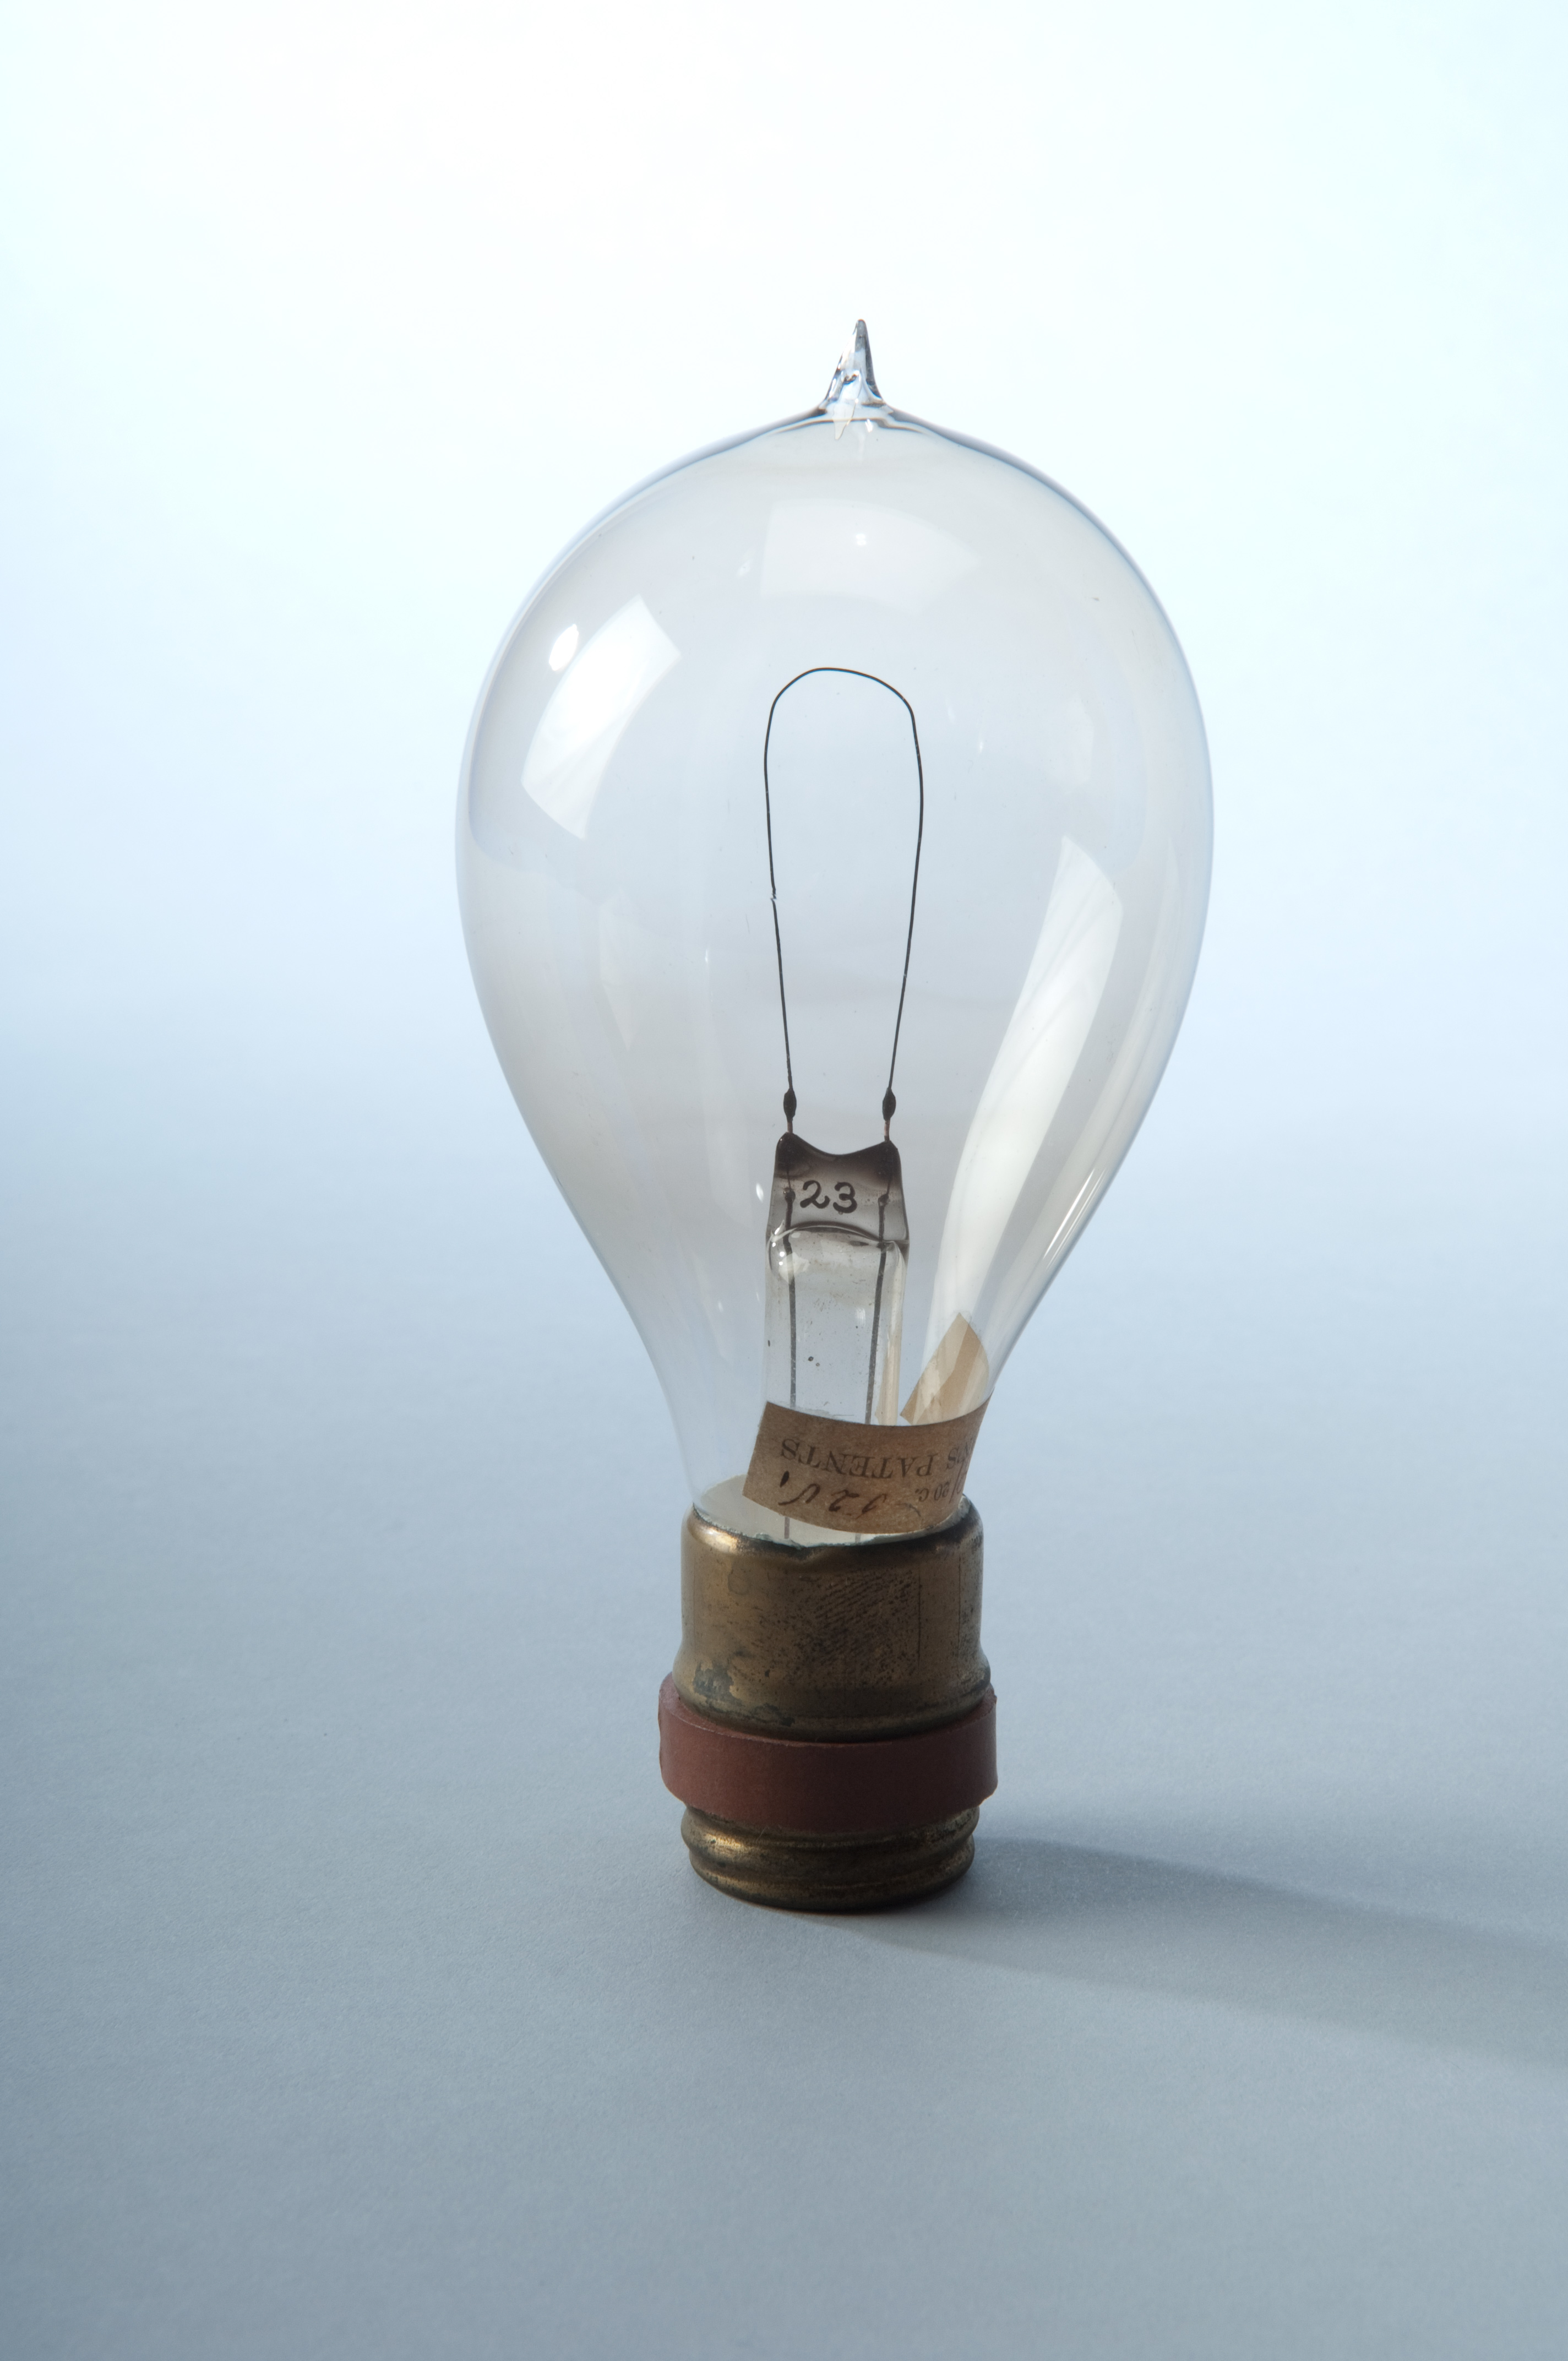 Создание лампочки: Двое суток без сна, или Как появилась лампа накаливания